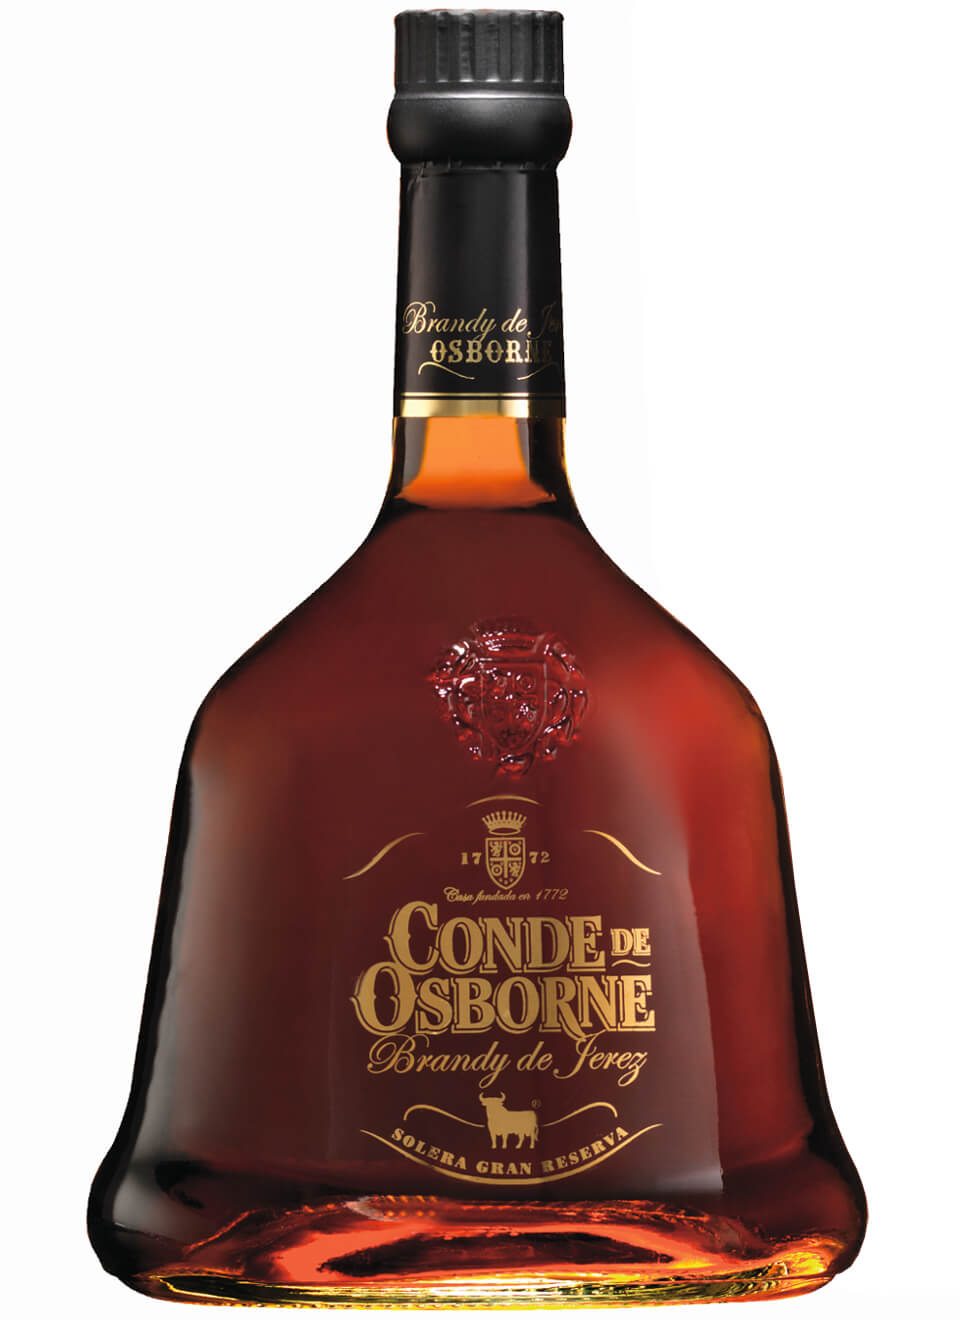  Conde de Osborne Solera Gran Reserva Brandy Flasche 1 x 0,7 l